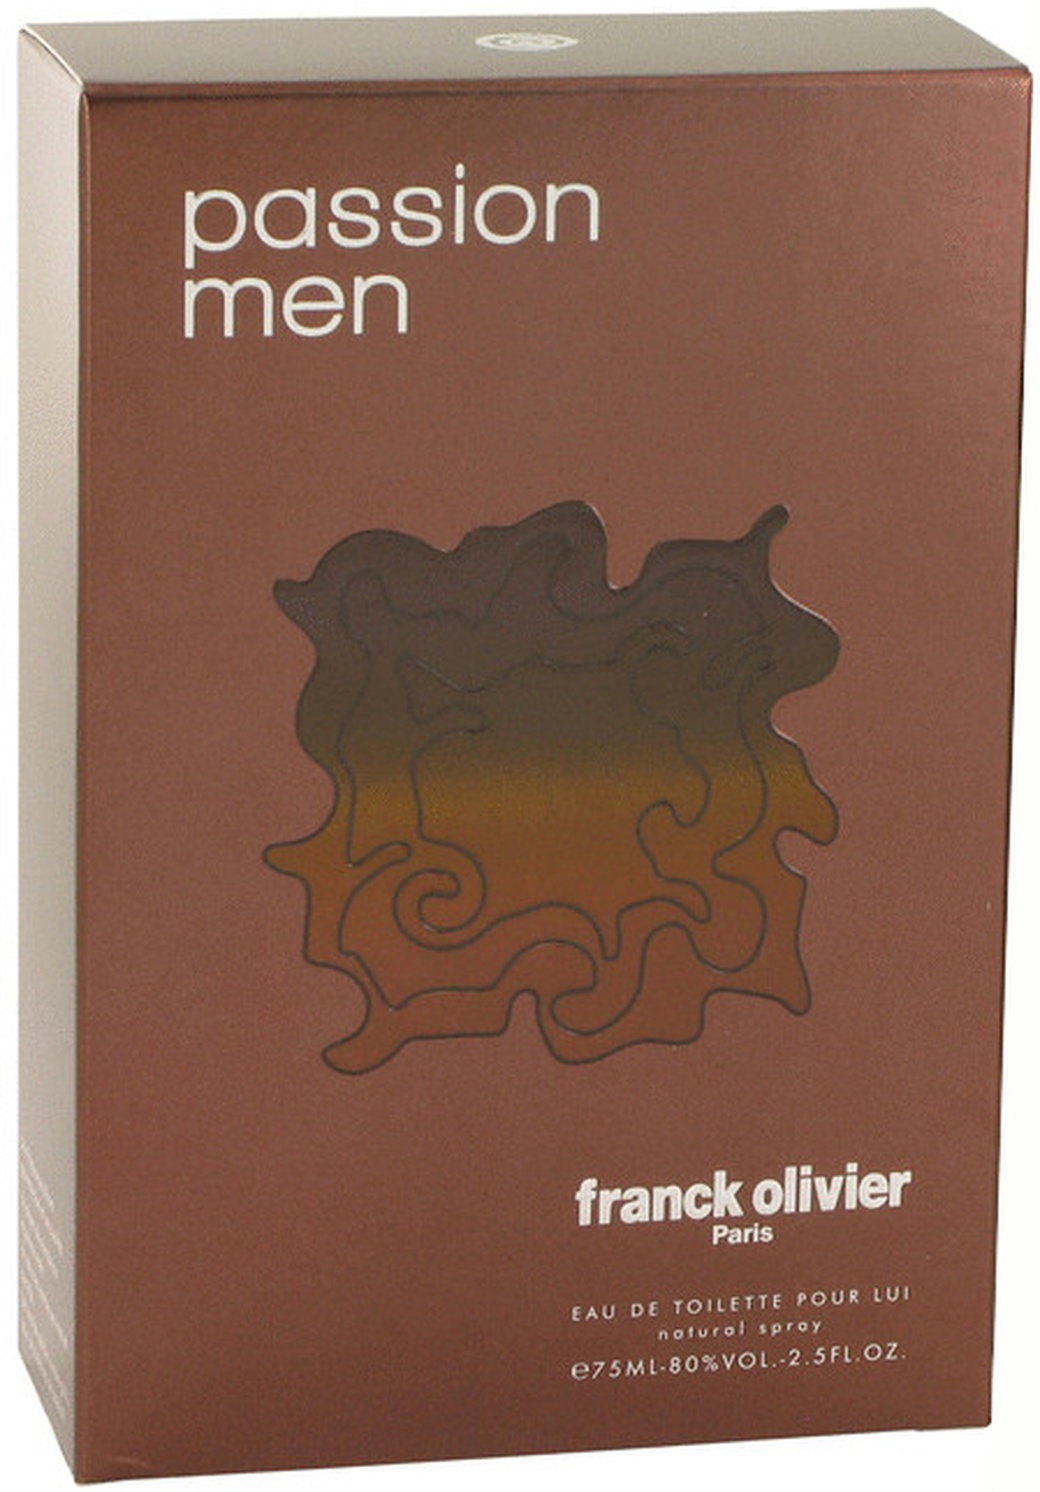 Franck olivier passion